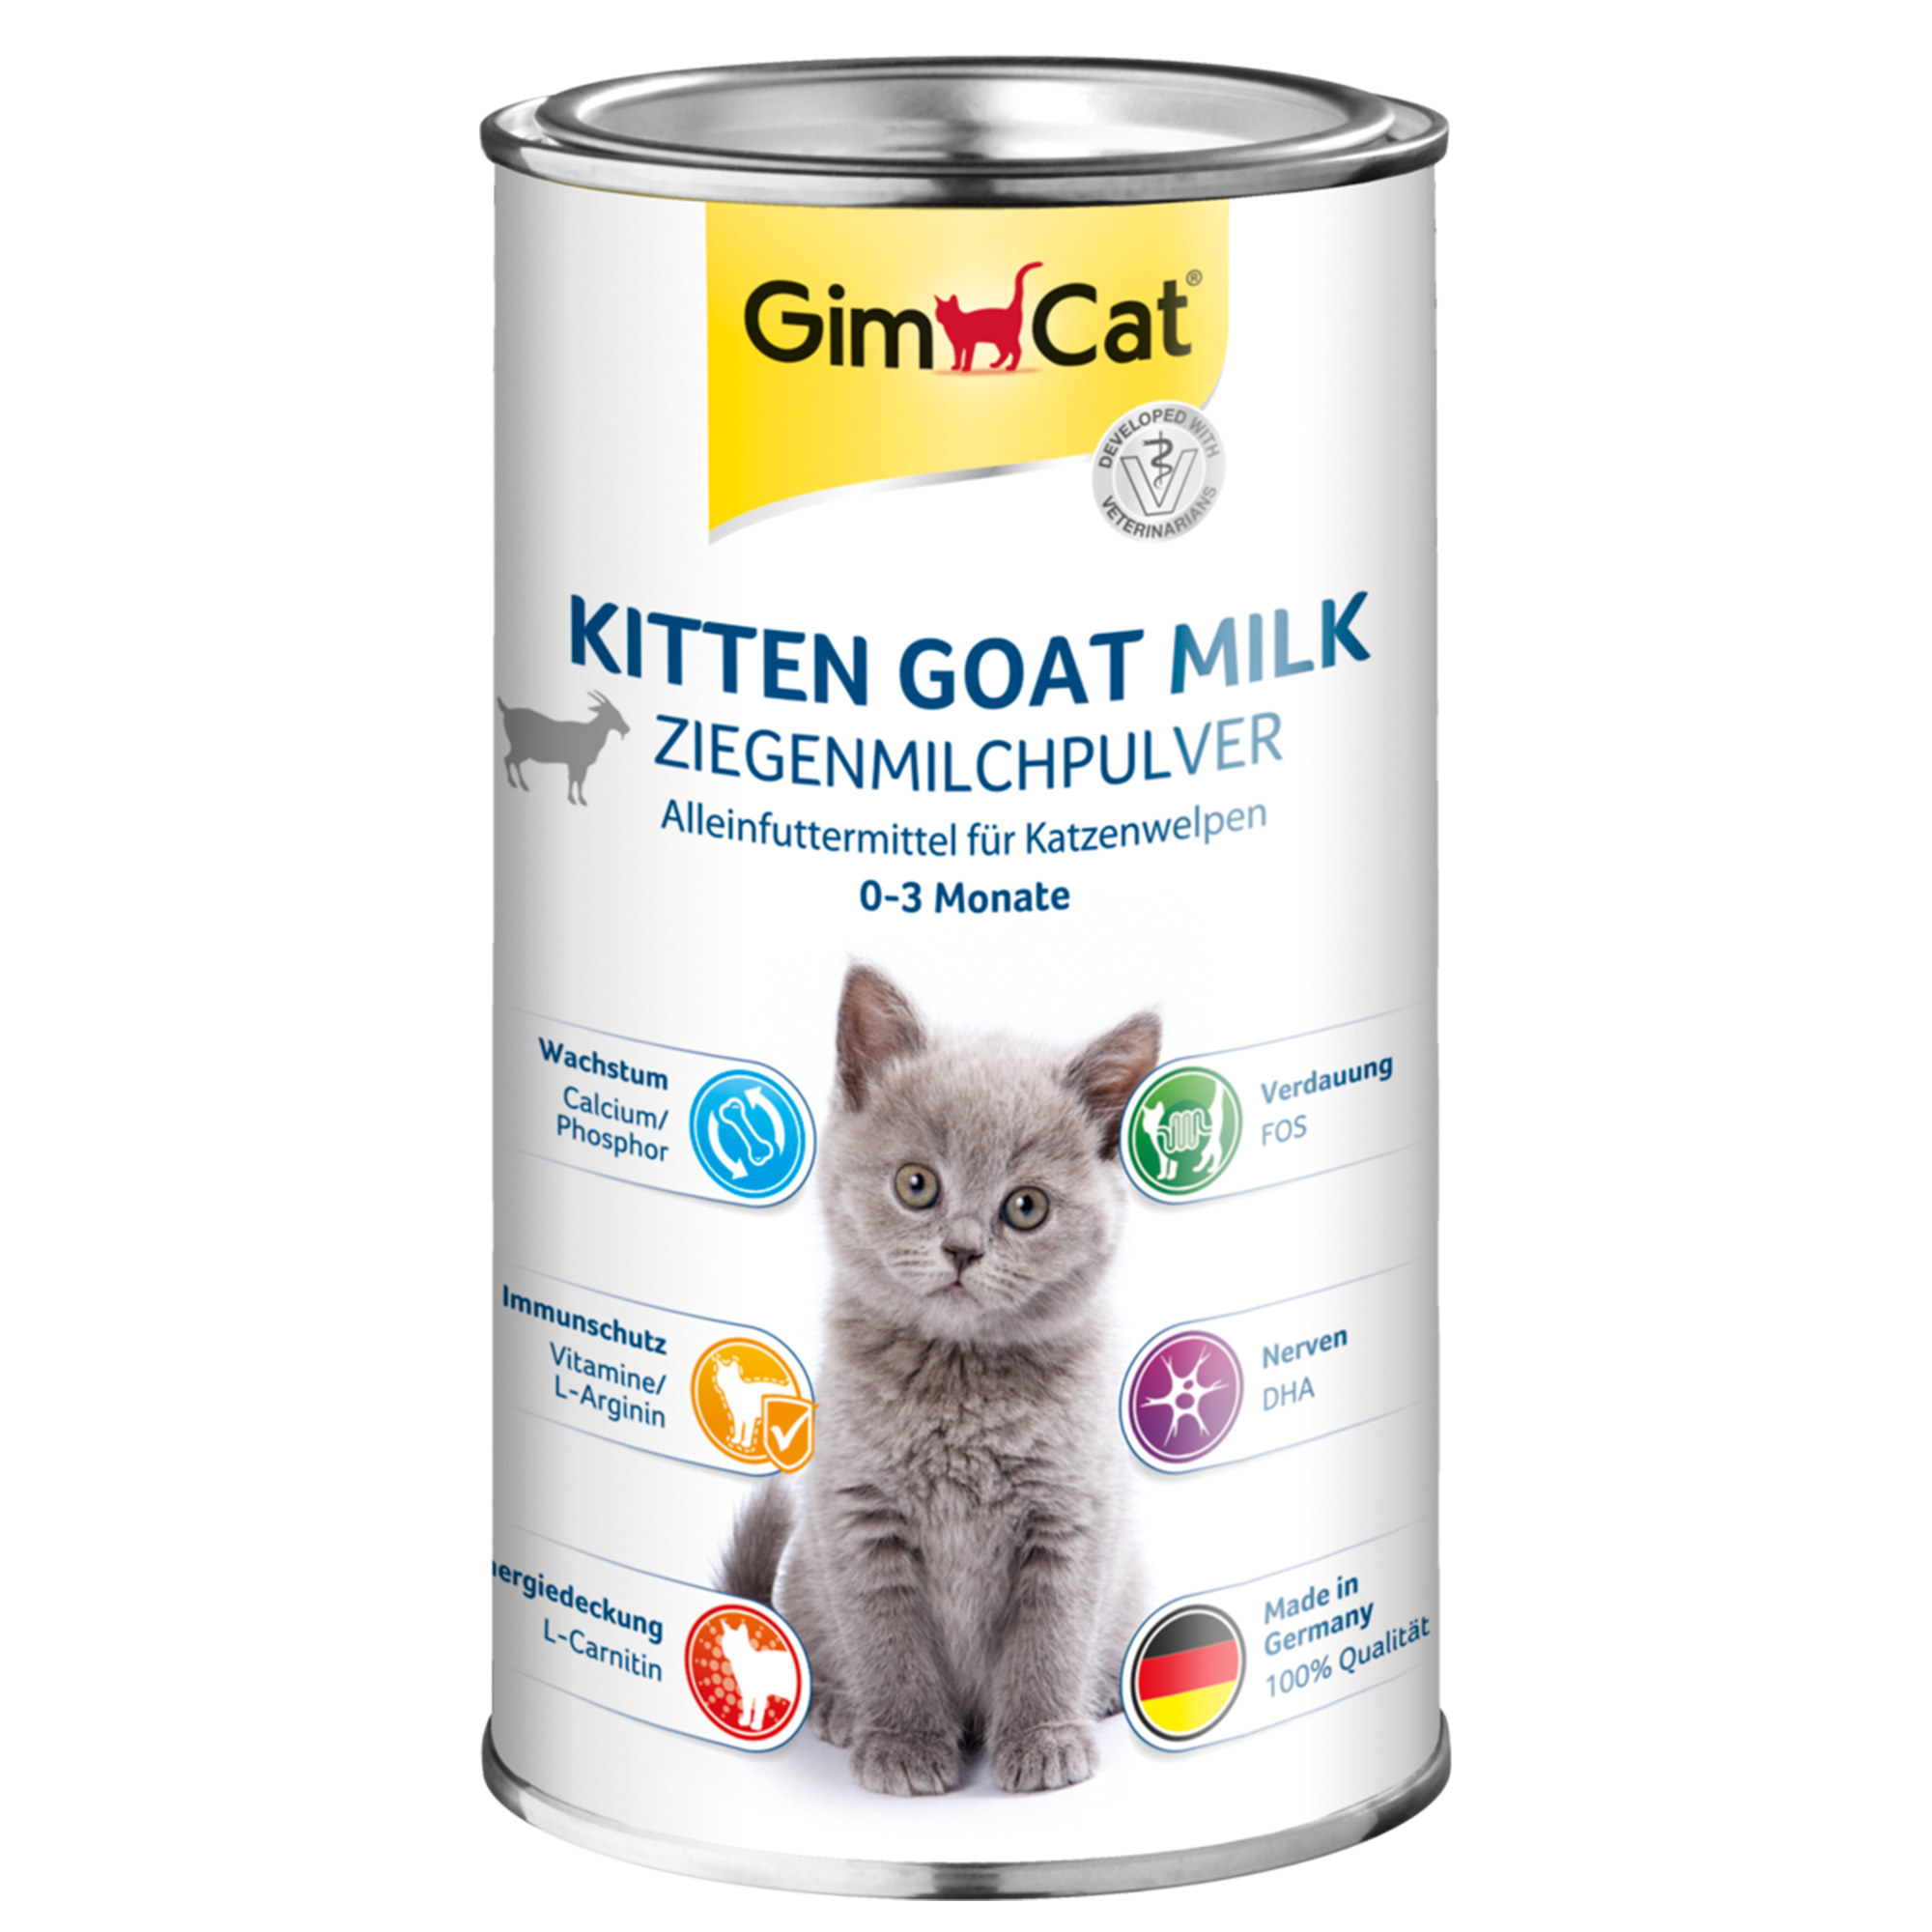 GimCat Kitten Goat Milk - Ziegenmilchpulver 200g